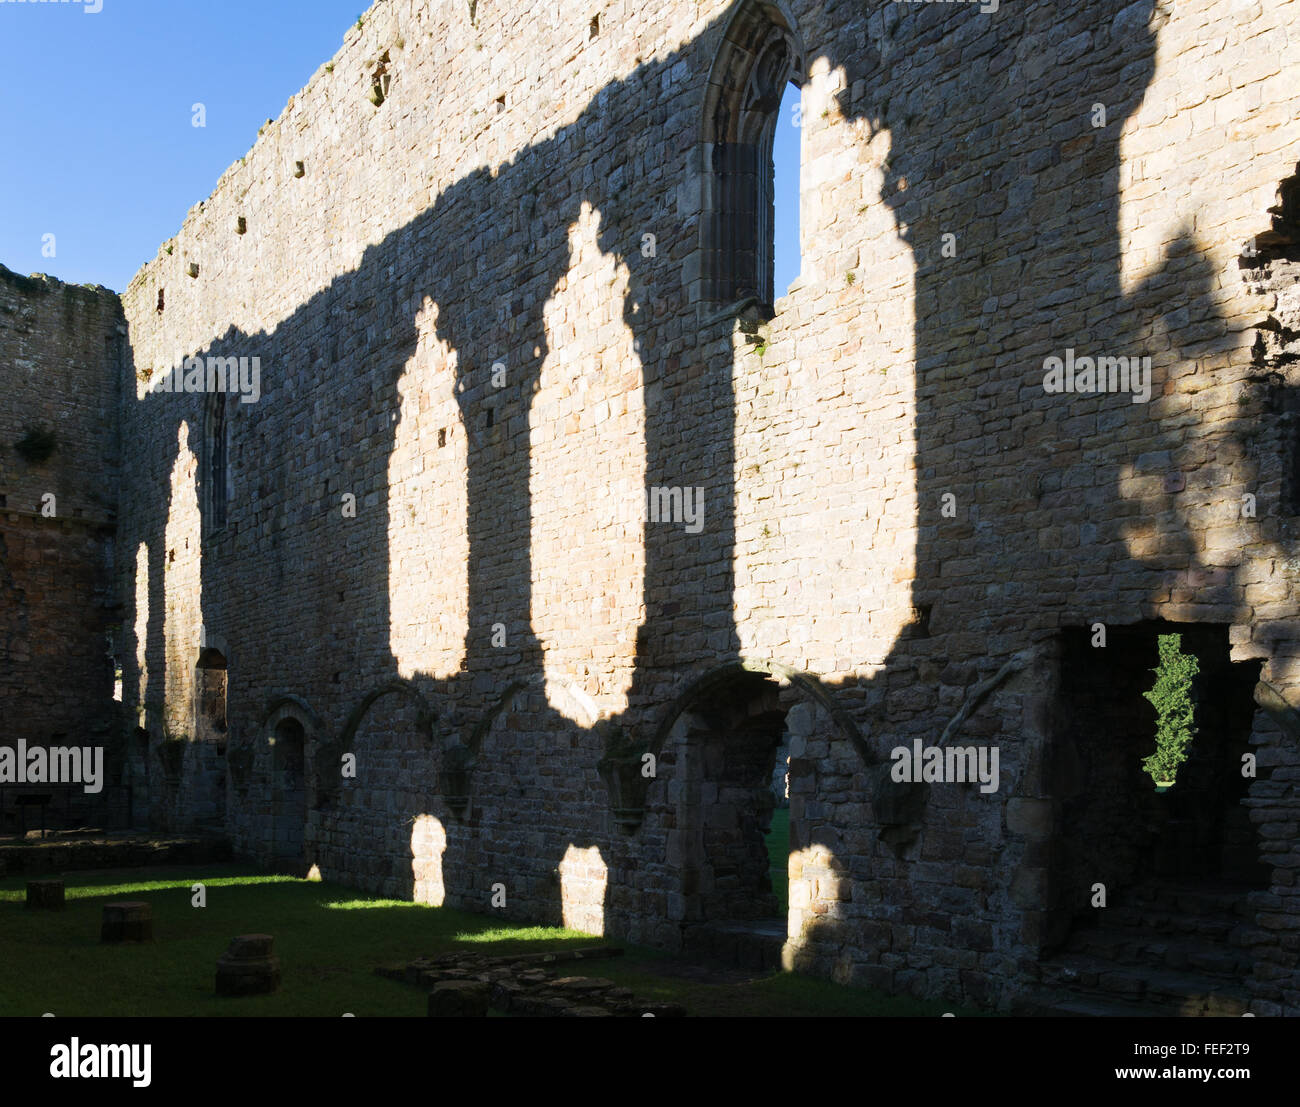 Les ombres dans l'Abbaye de Sainte Agathe ou Abbaye d'Easby, près de Richmond, North Yorkshire, England, UK Banque D'Images